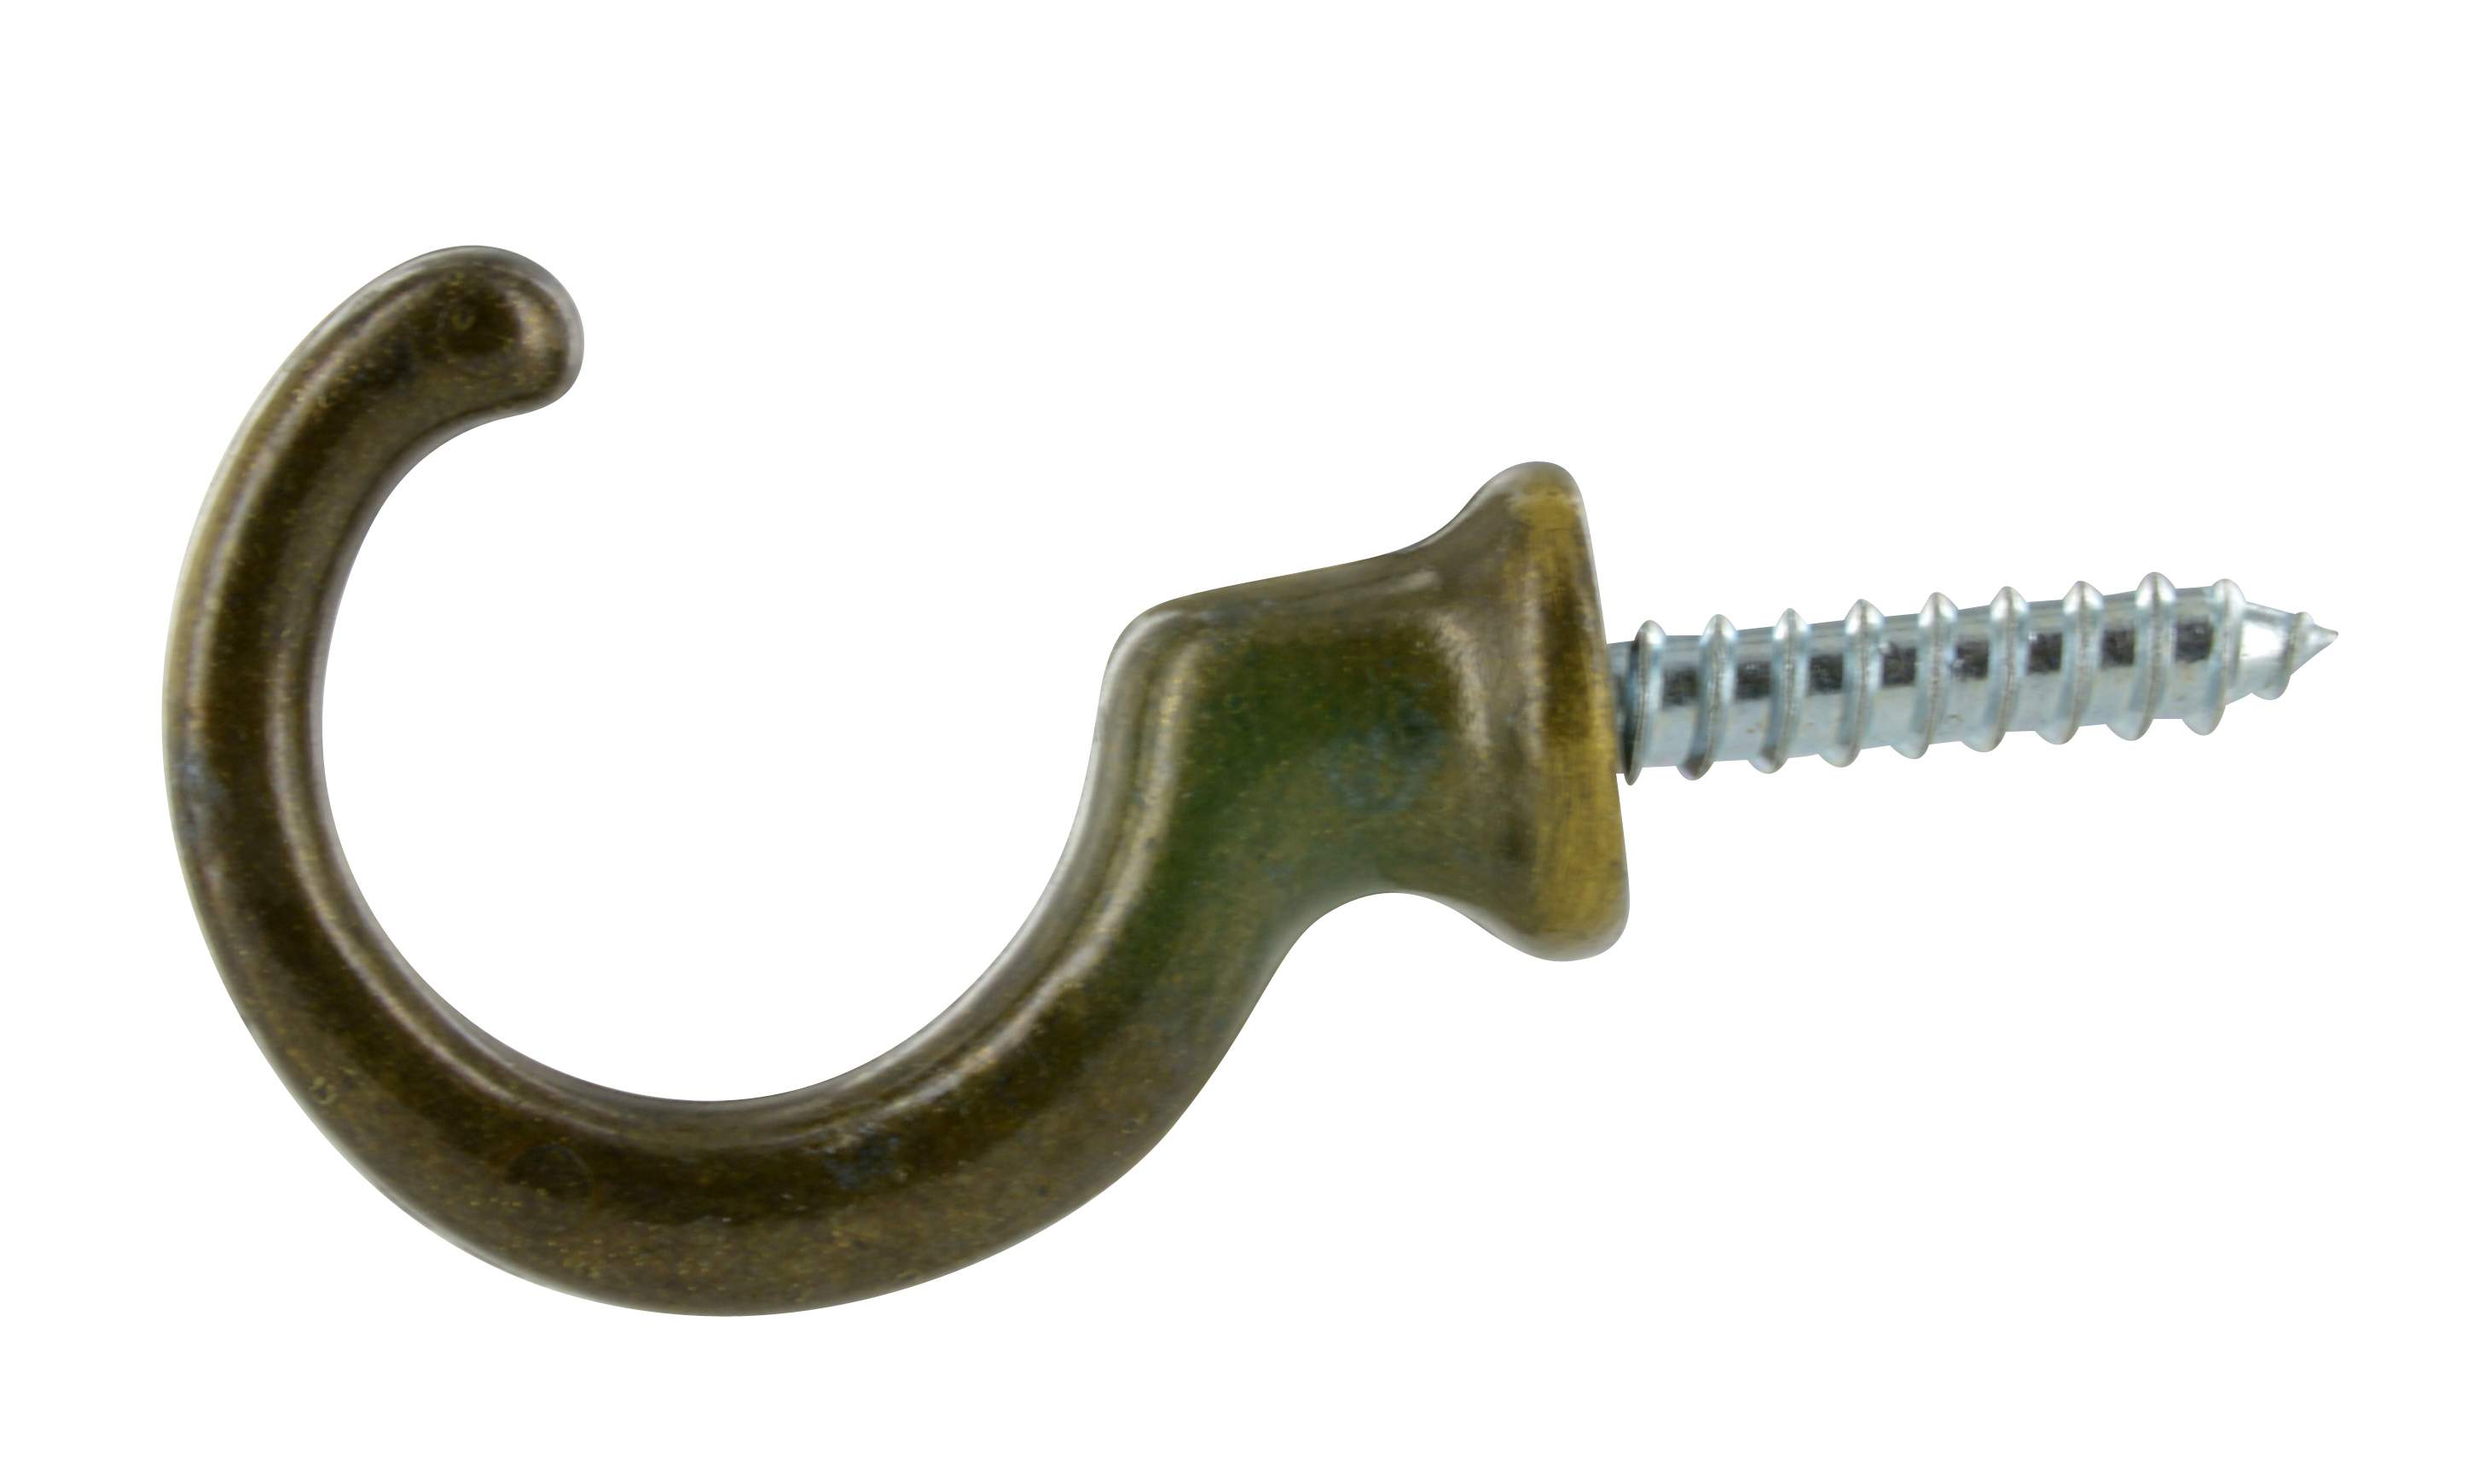 Tieback hook, Zamak bronze, L.35mm, H.27mm, 2 pieces with screws.